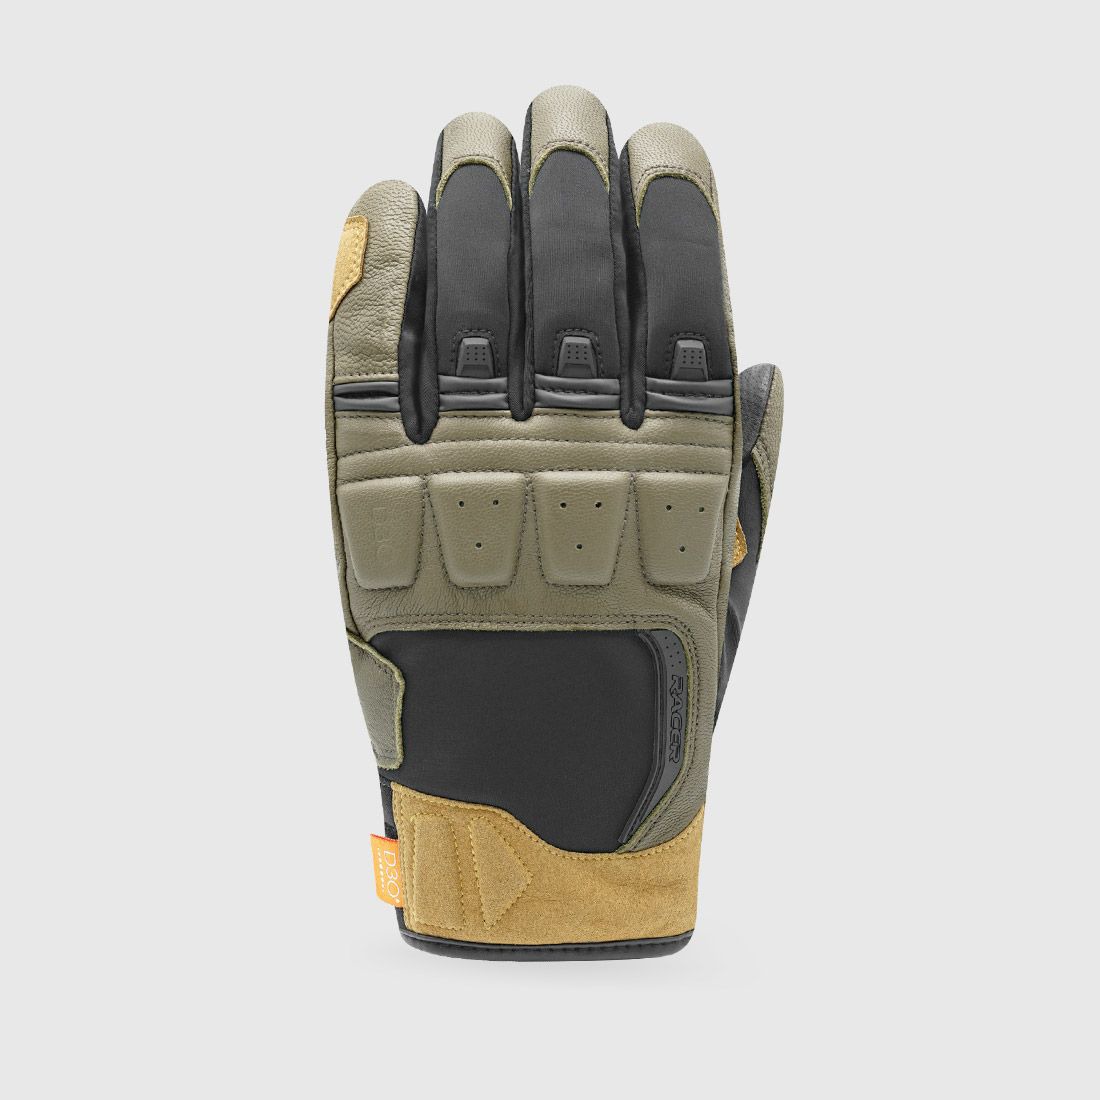 gloves RONIN WINTER, RACER (black/khaki)